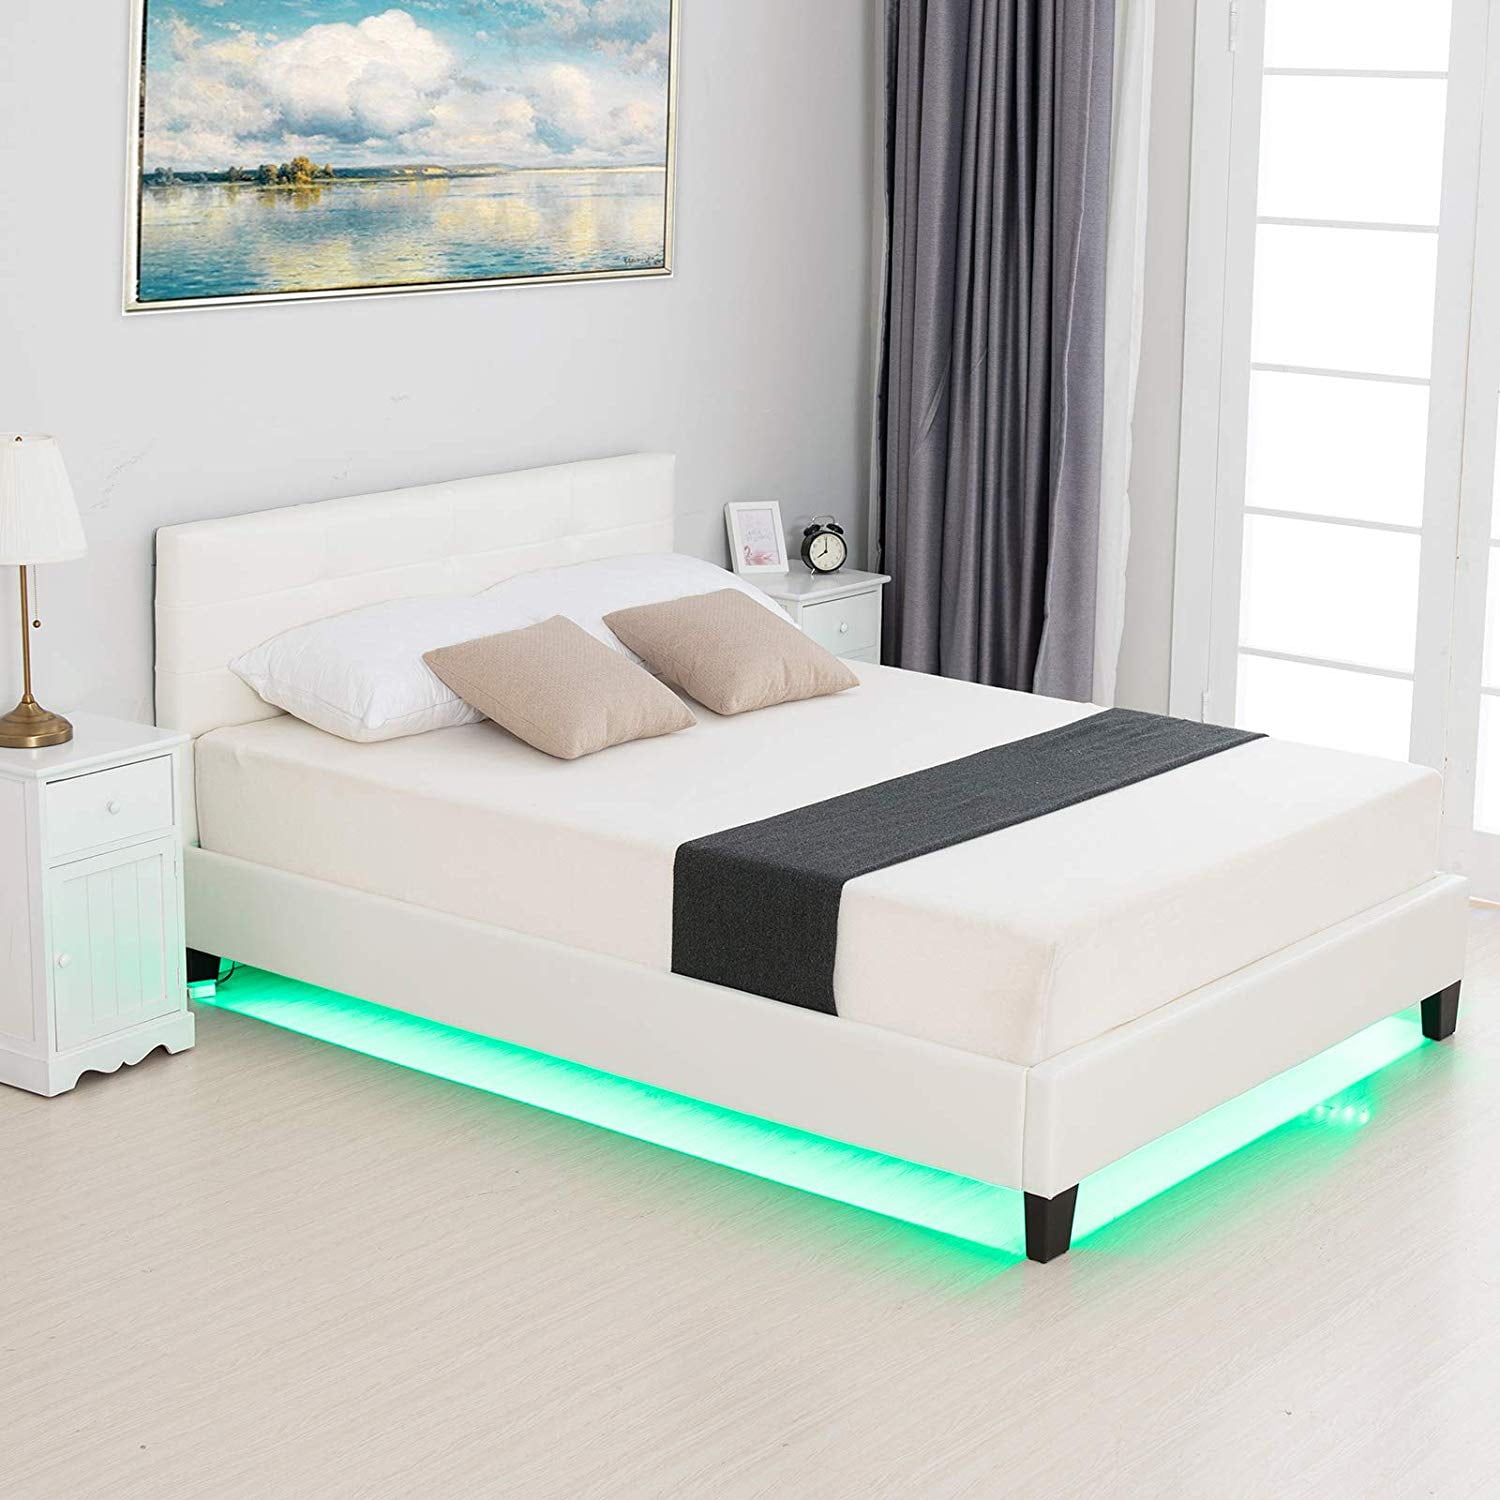 modern platform bed with led lights